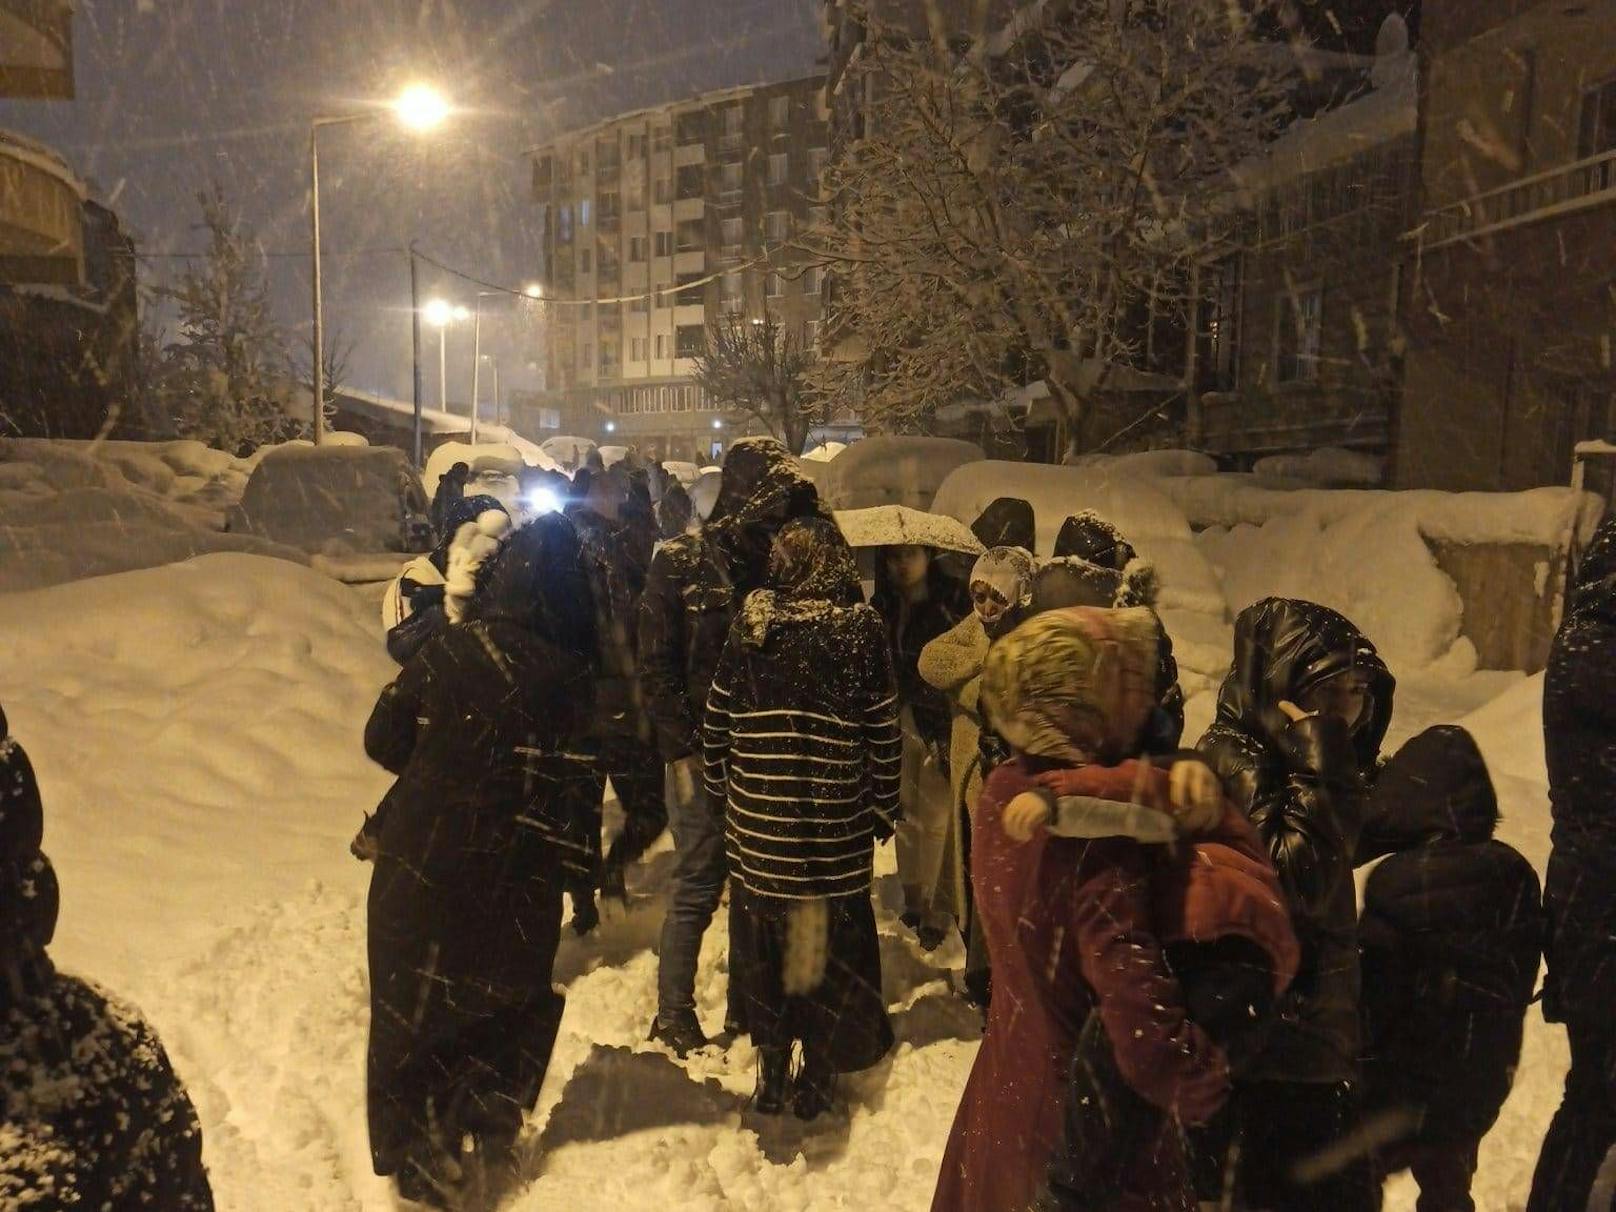 Viele Menschen, die bei den Beben aus ihren Häusern geflüchtet waren, mussten bei Eis und Schnee im Freien ausharren. (Bild vom 6. Februar 2023)